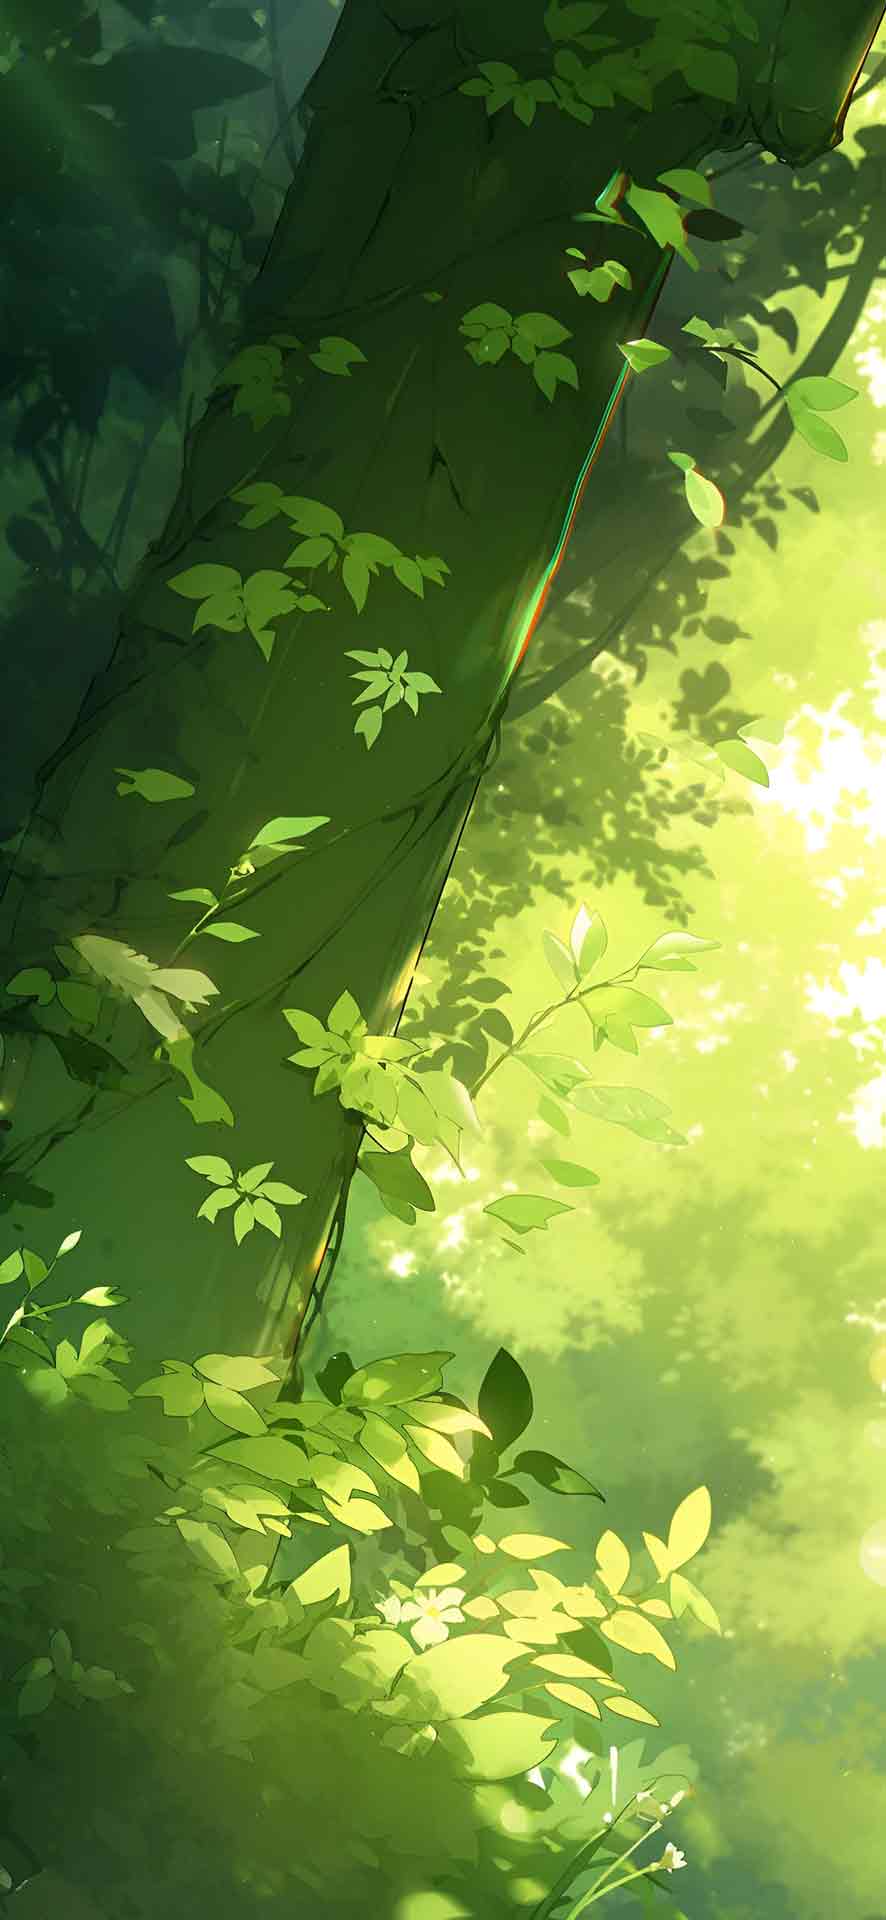 绿色阳光照射的森林自然壁纸